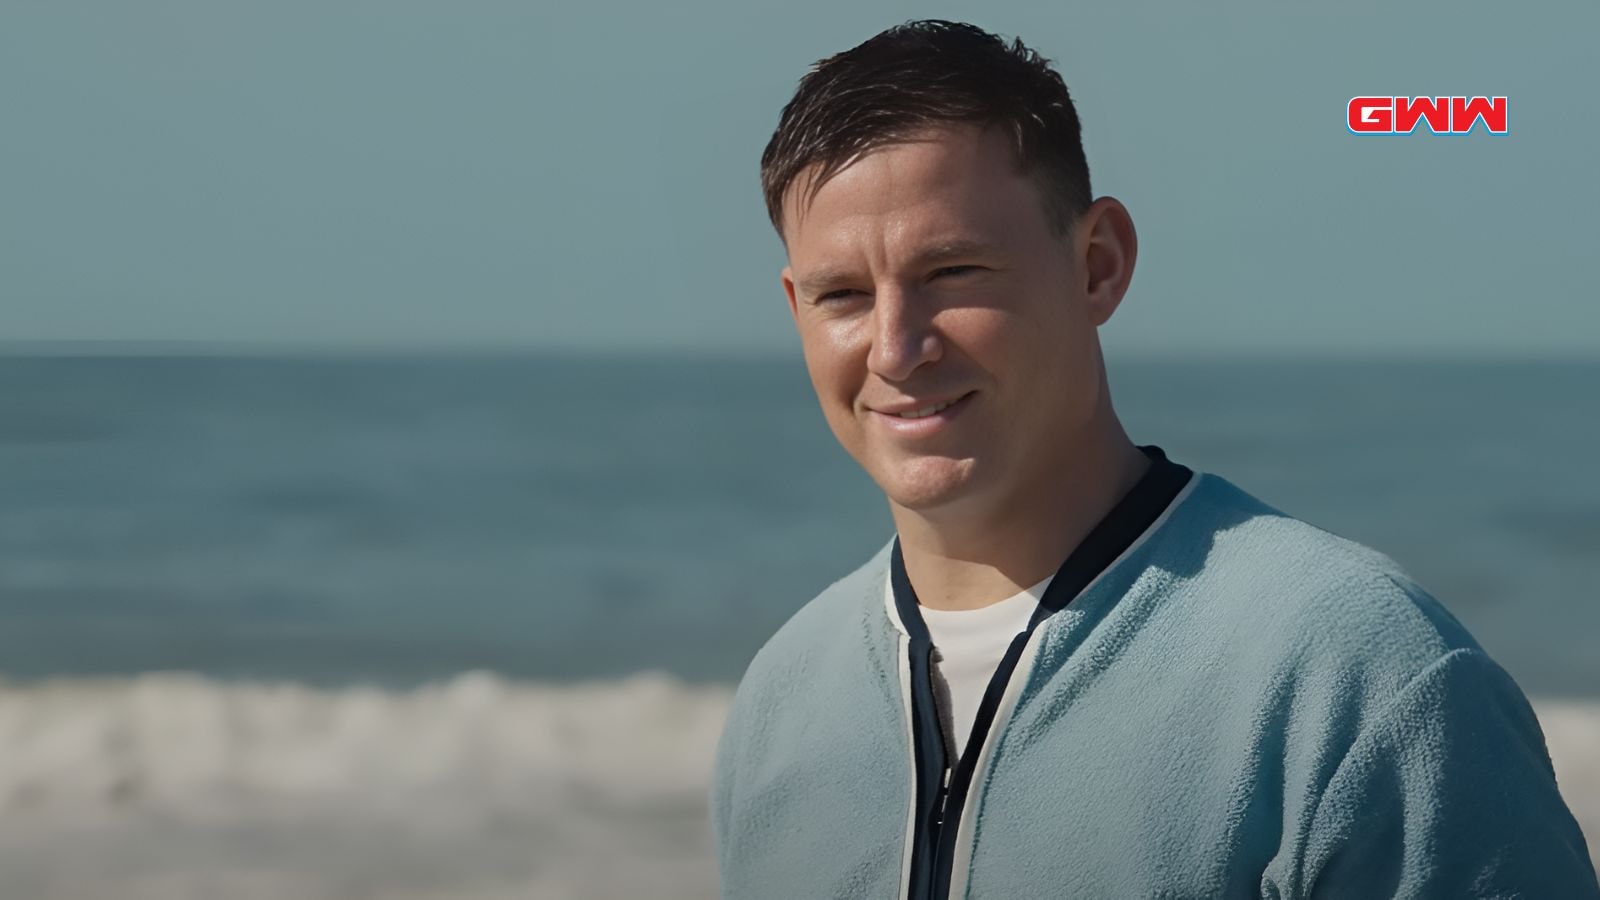 Cole con chaqueta azul sonriendo en la playa con fondo marino.